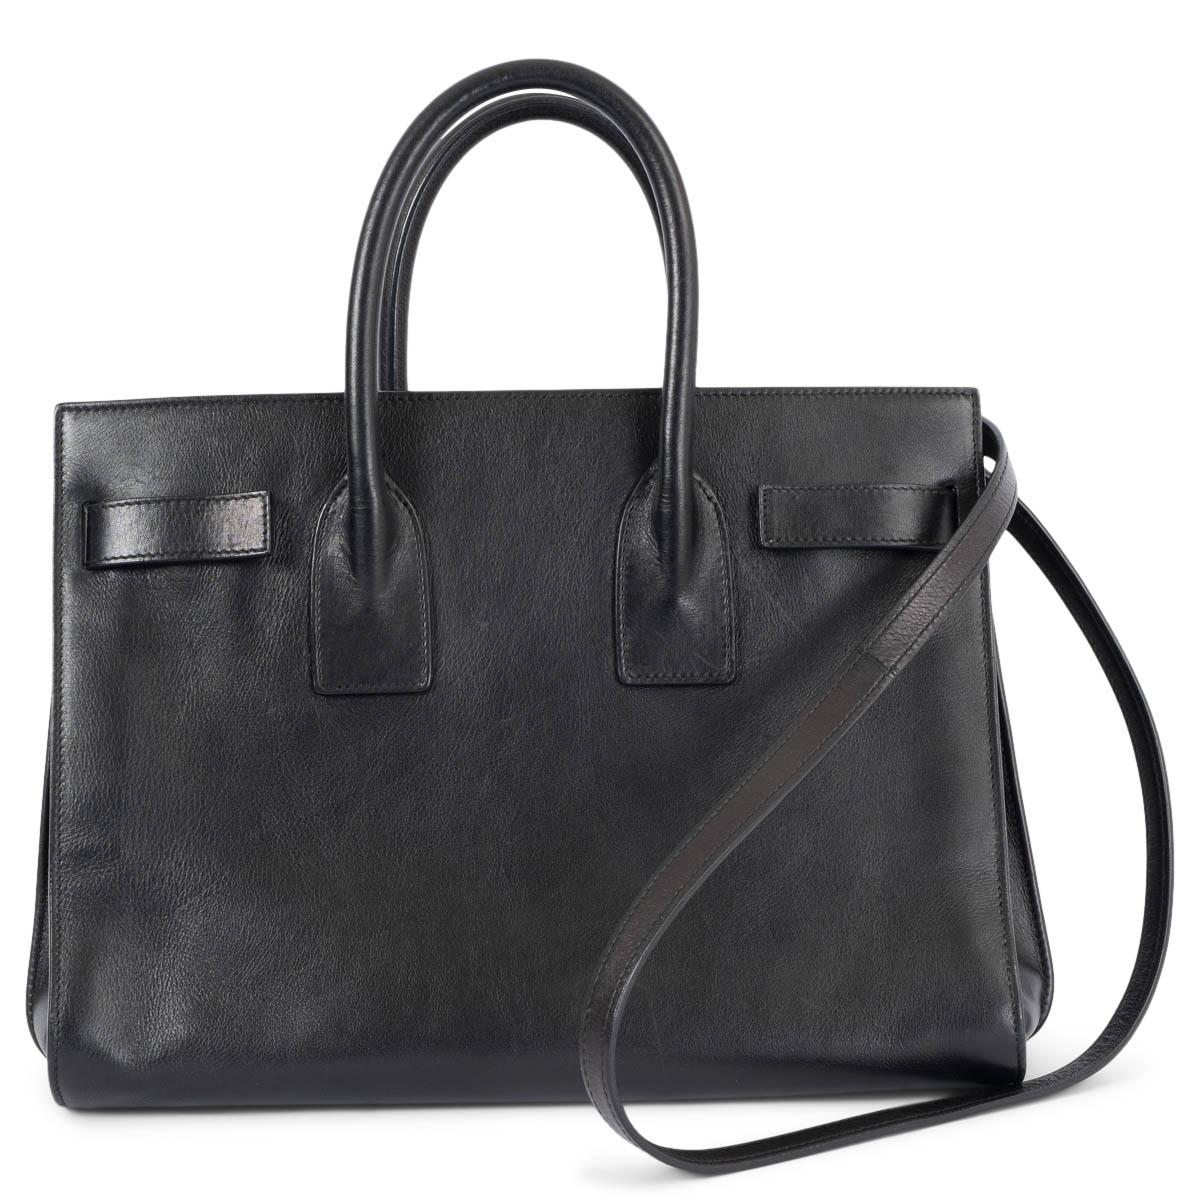 Black SAINT LAURENT black leather SMALL SAC DE JOUR Tote Bag